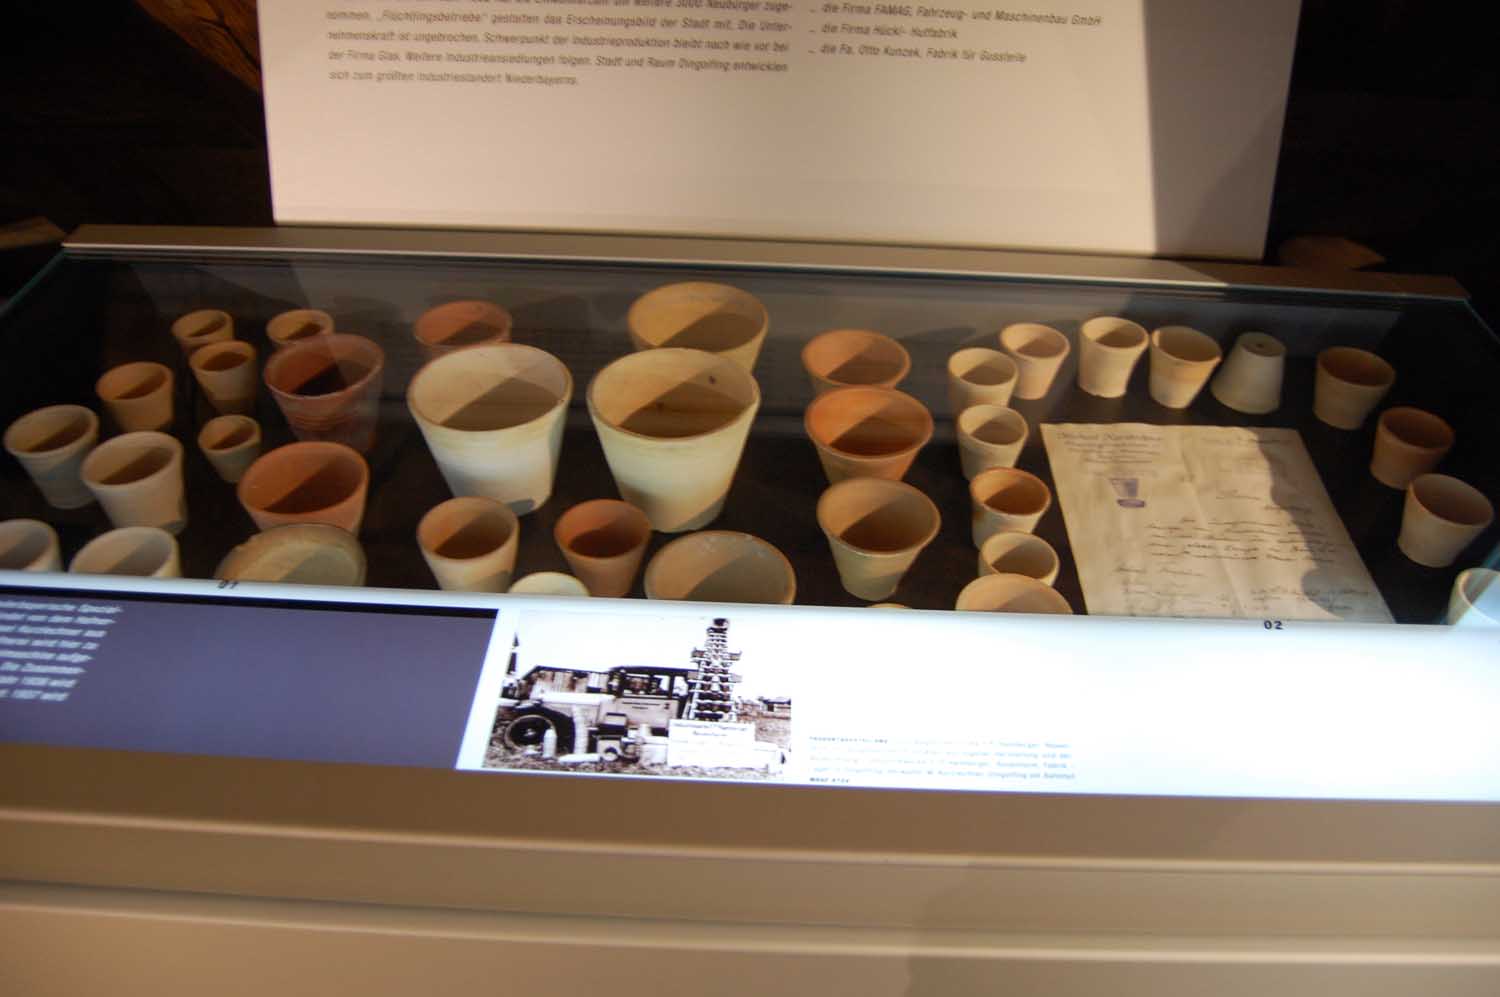 Industriemuseum Dingolfing
Auch dies ein frühes Produkt aus der Industriestadt an der Isar: Blumentöpfe aus Keramik.